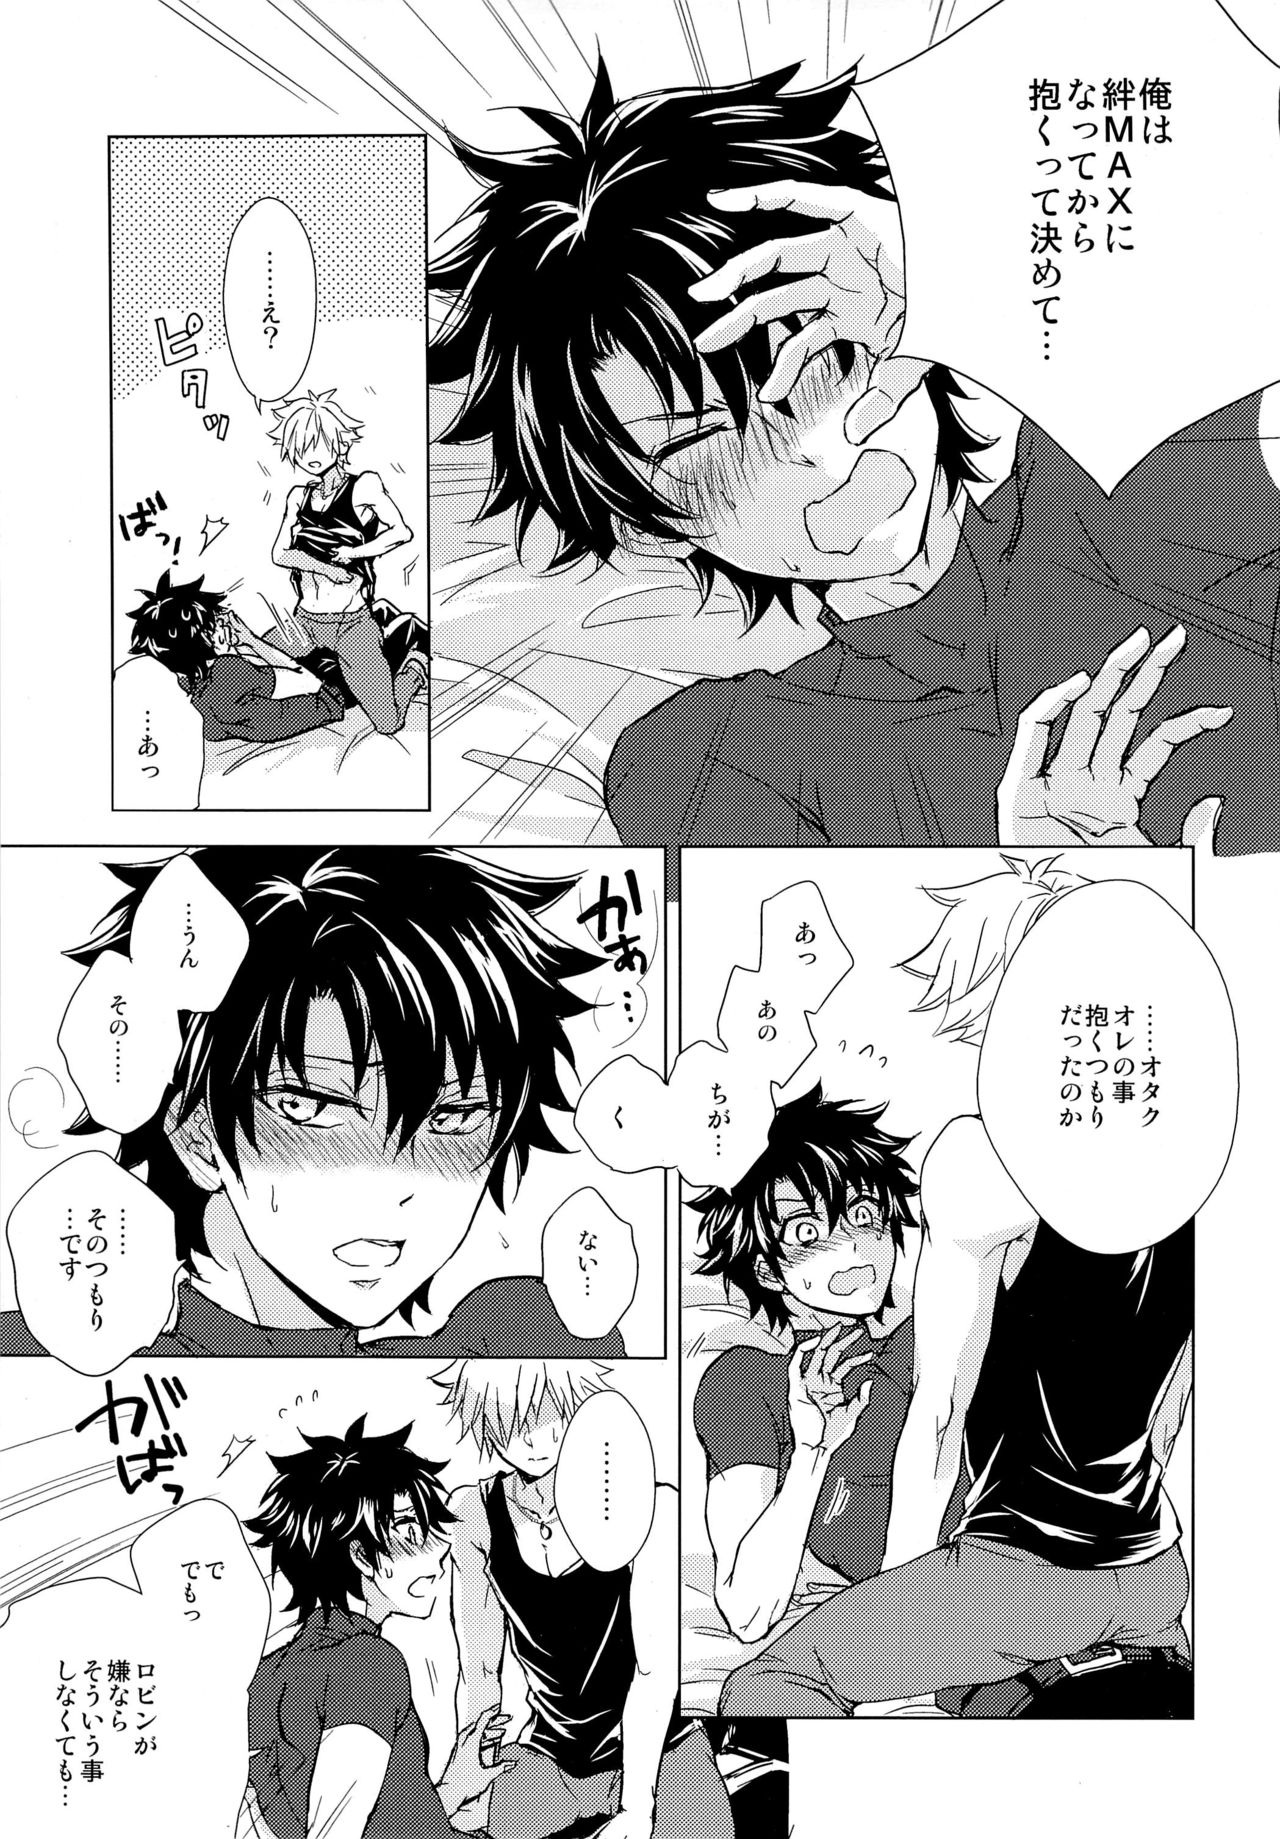 (Dai 7-ji ROOT4to5) [Uji (Meguro)] Kizuna 10 ni Naru Made Shinai (Fate/Grand Order) page 7 full